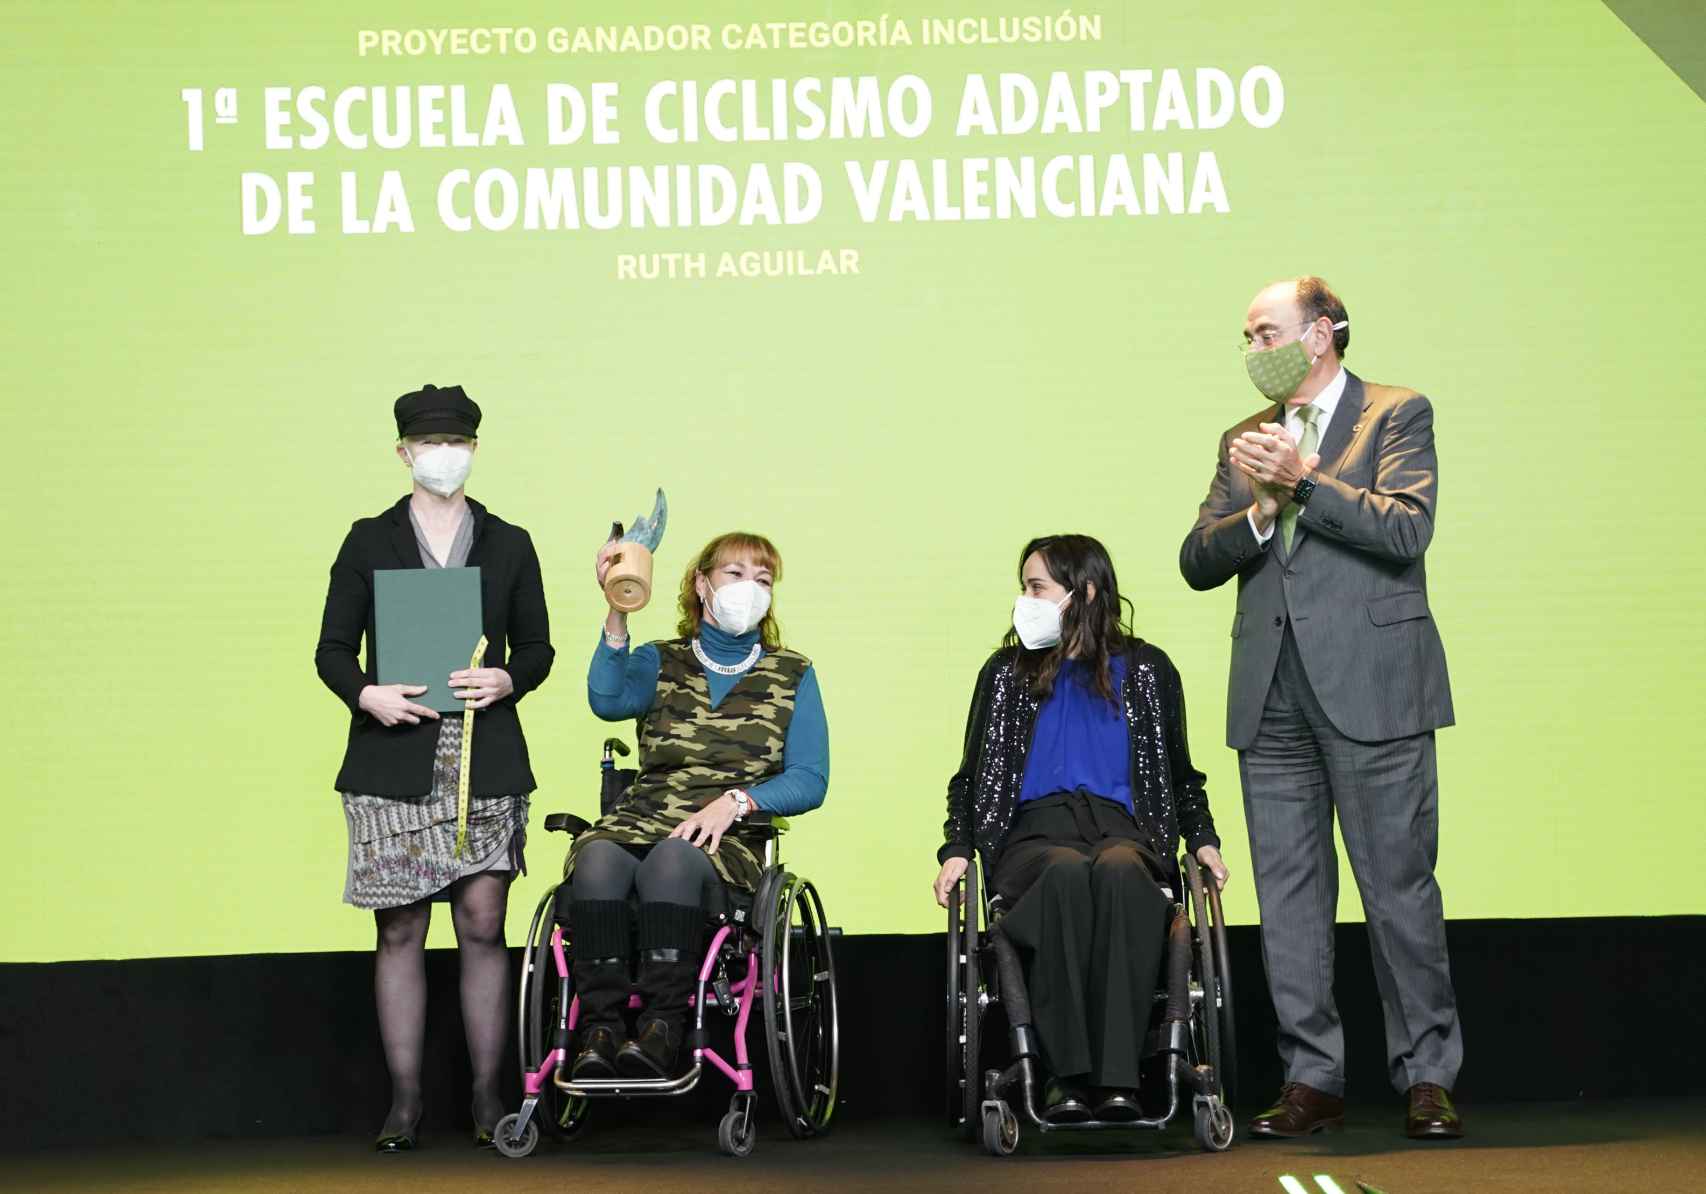 Proyecto ganador  en la categoría Inclusión.